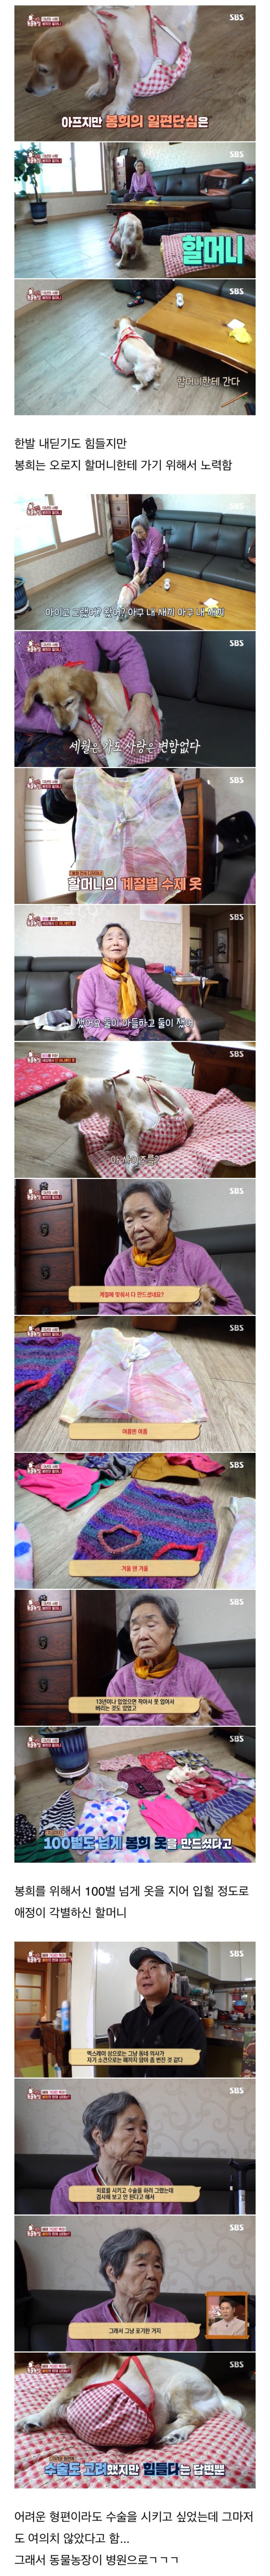 80대 할머니를 울게 만든 동물농장 제작진들.jpg